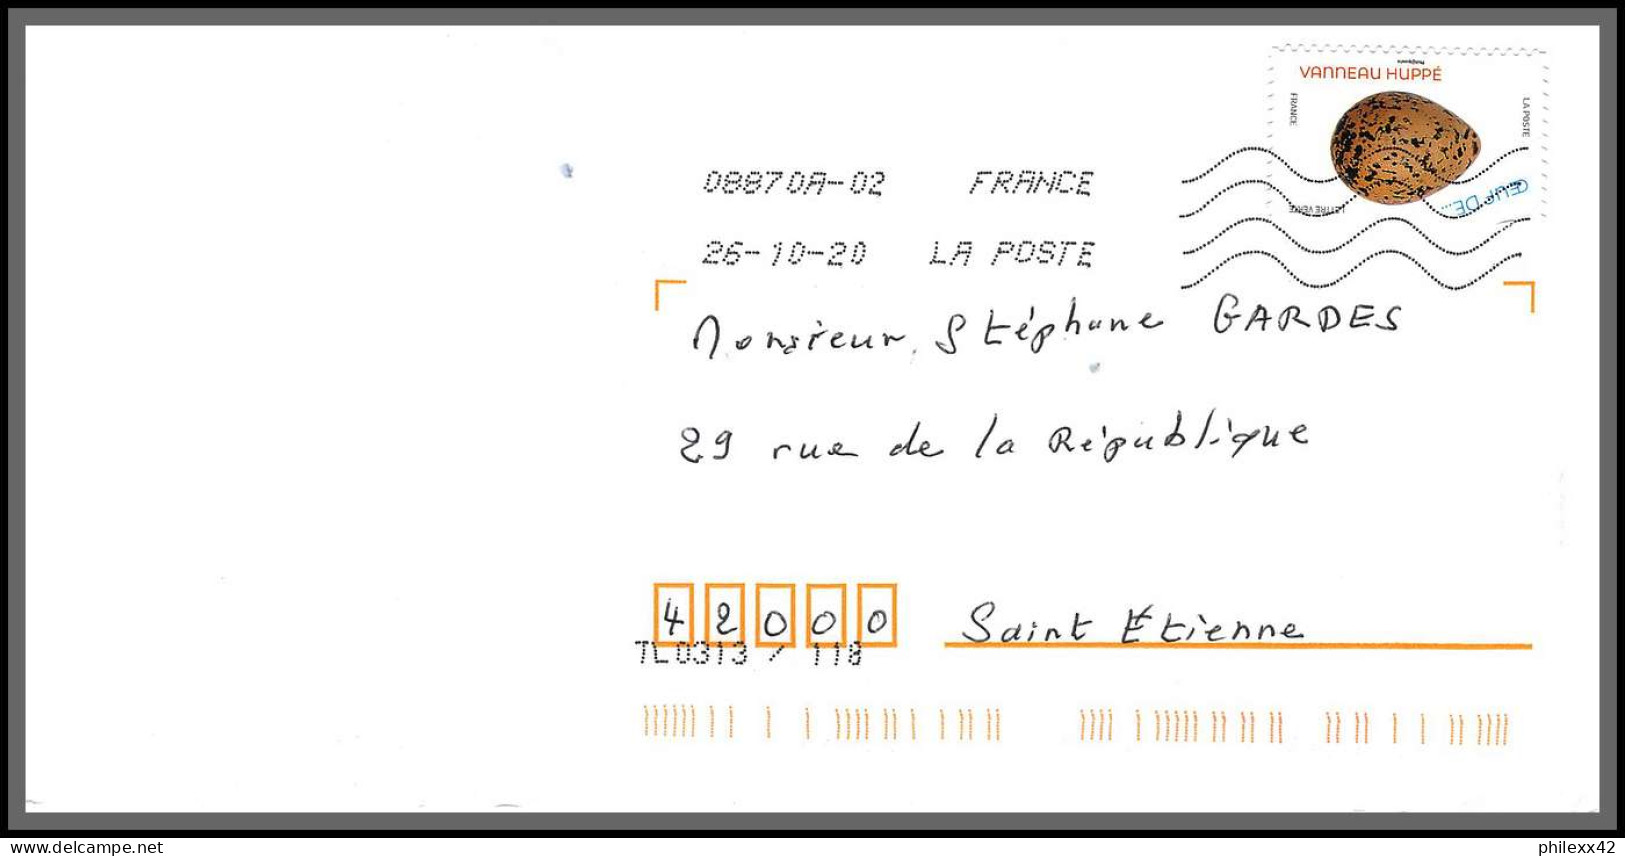 95886 - lot de 15 courriers lettres enveloppes de l'année 2020 divers affranchissements en EUROS